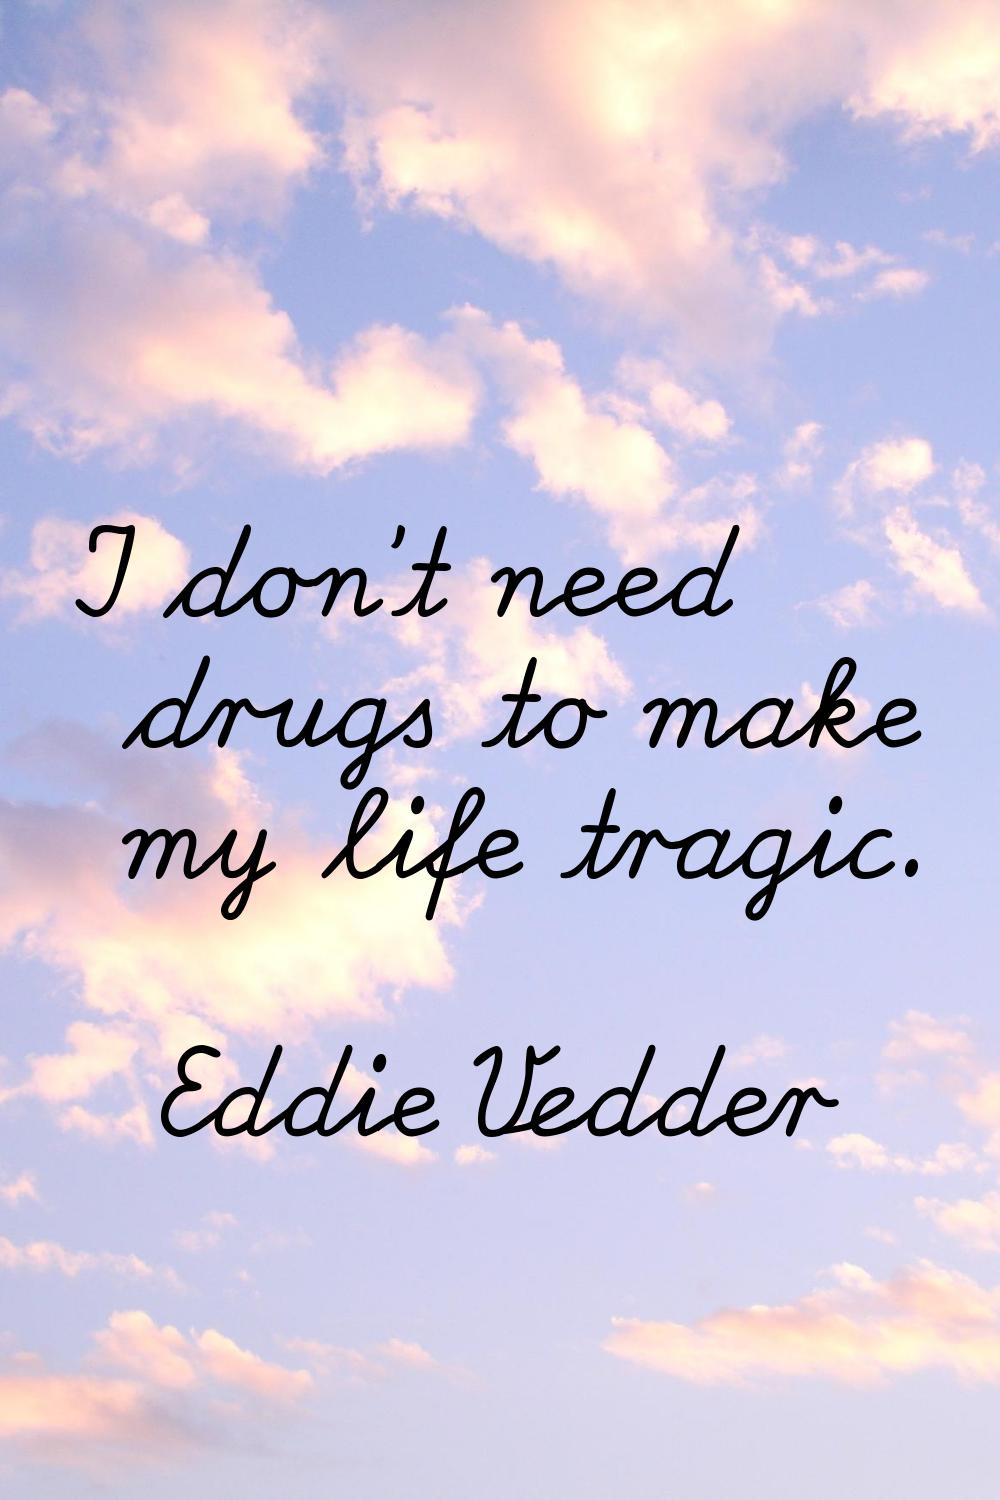 I don't need drugs to make my life tragic.